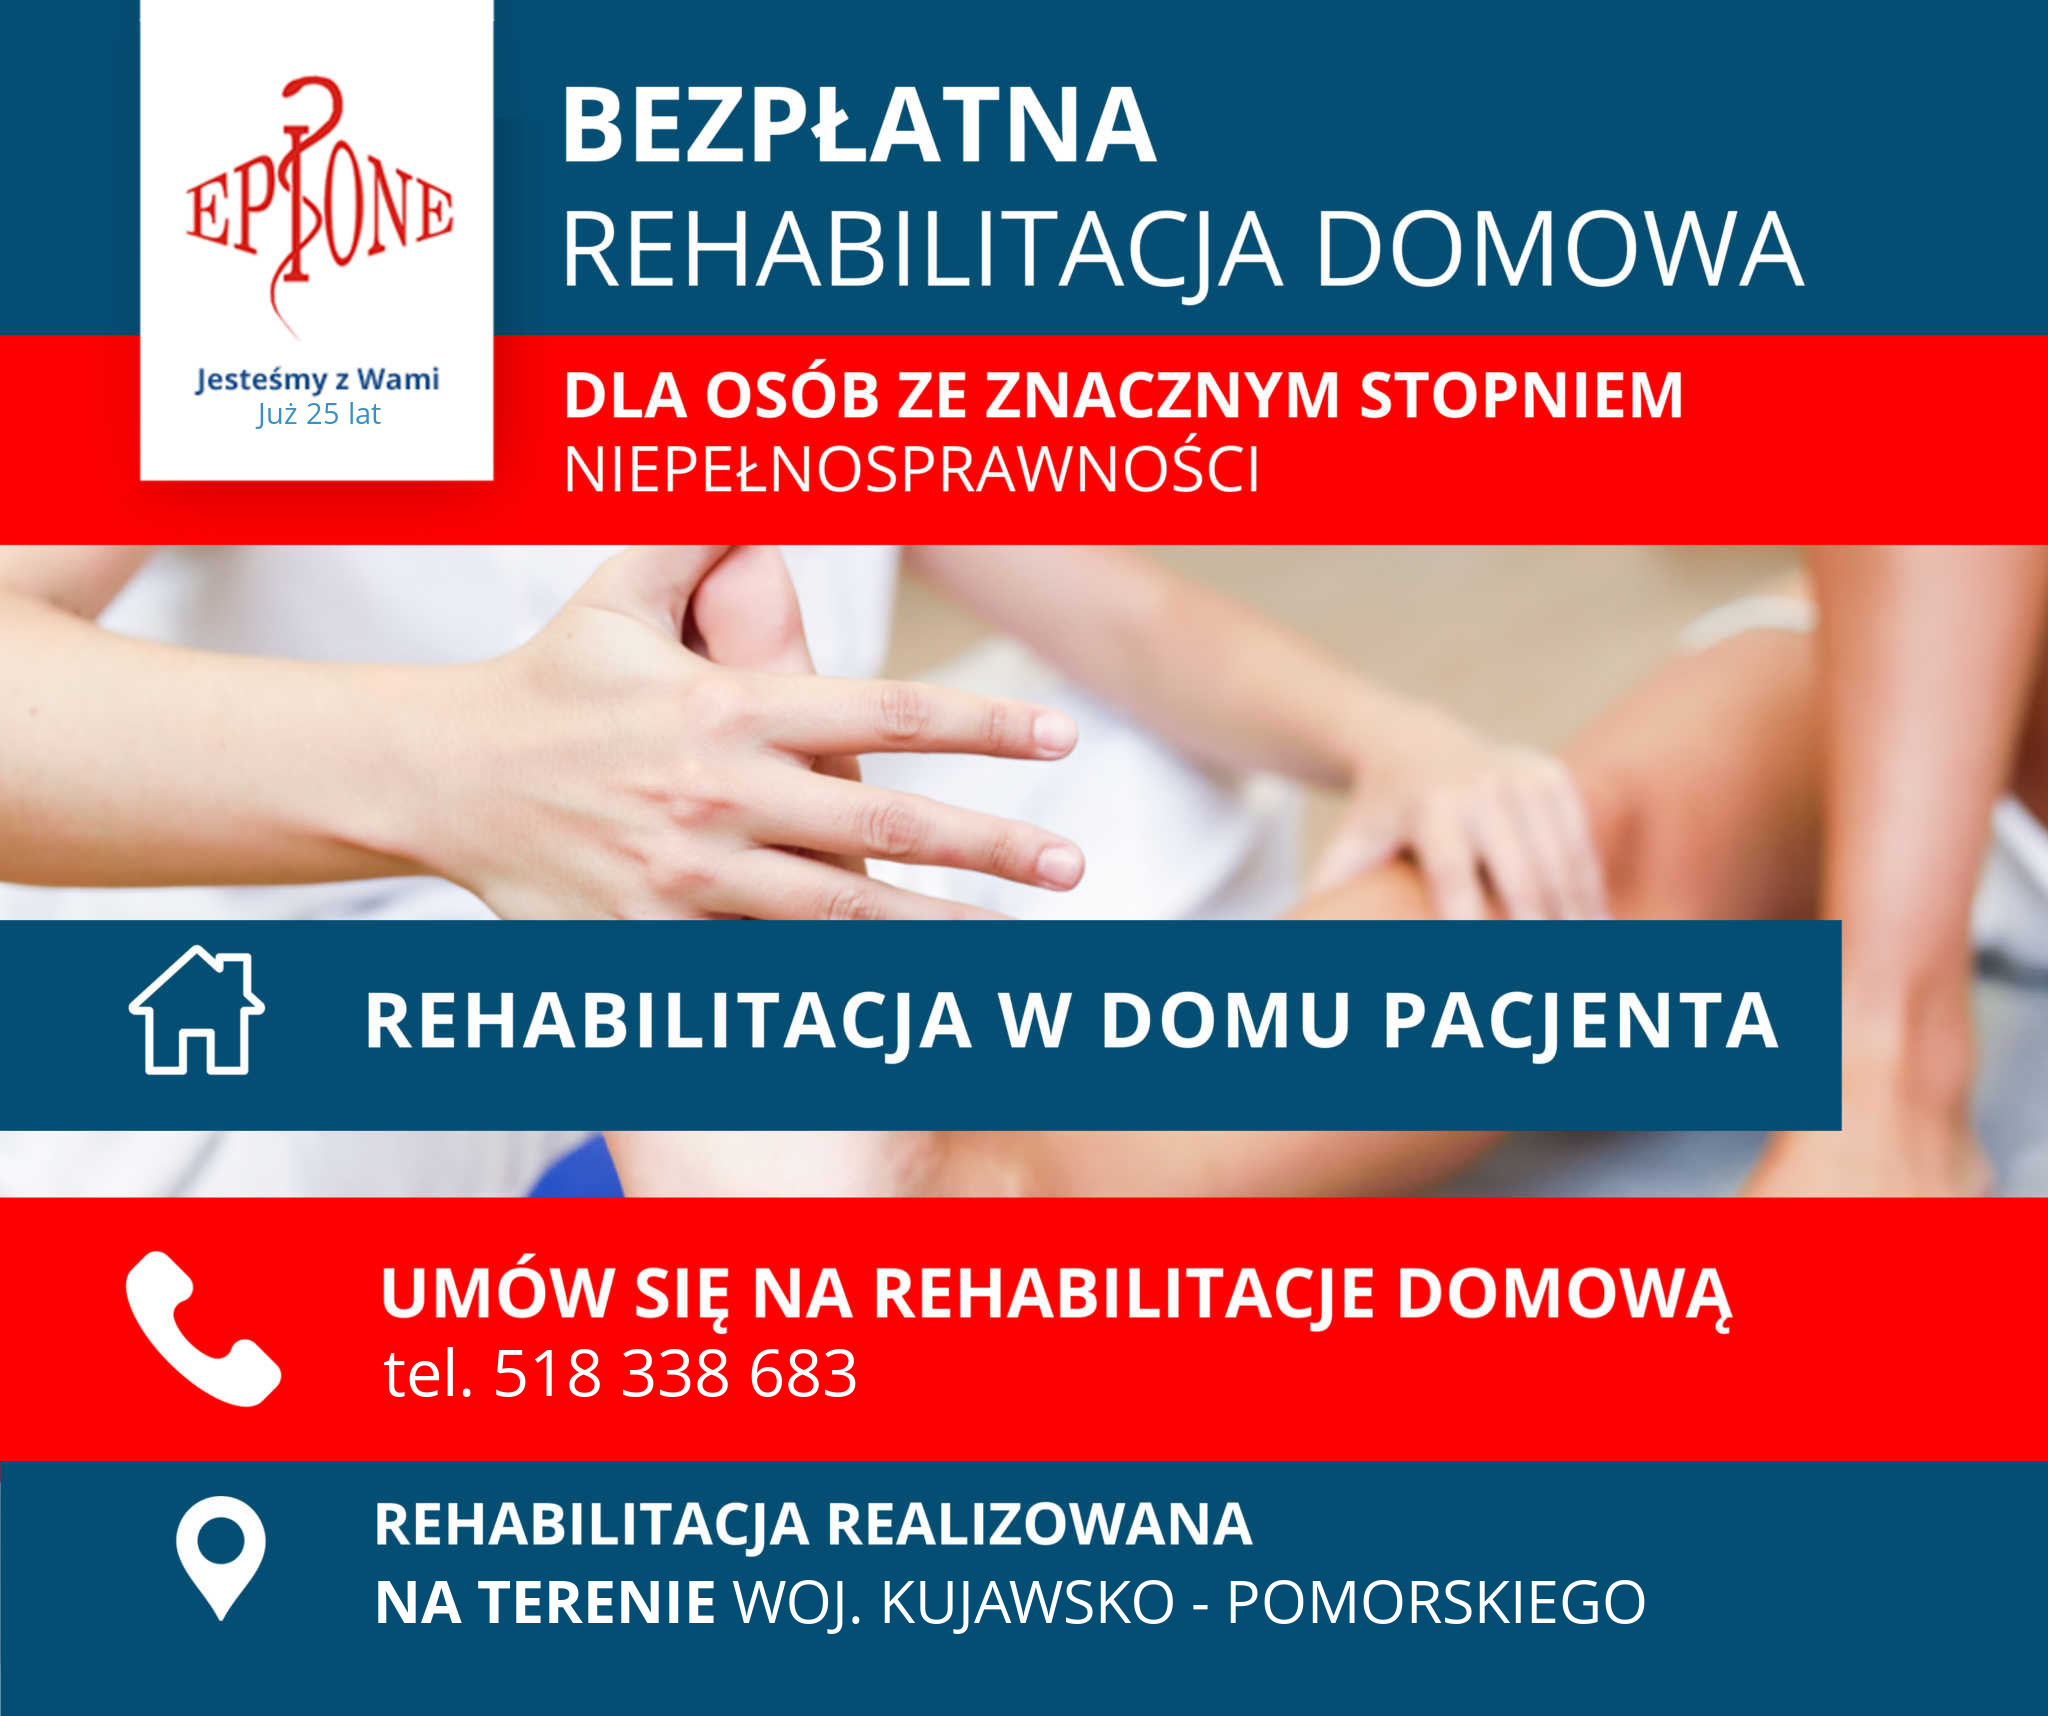 Rehabilitacja NFZ Bydgoszcz Bezpłatna Kujawsko Pomorskie